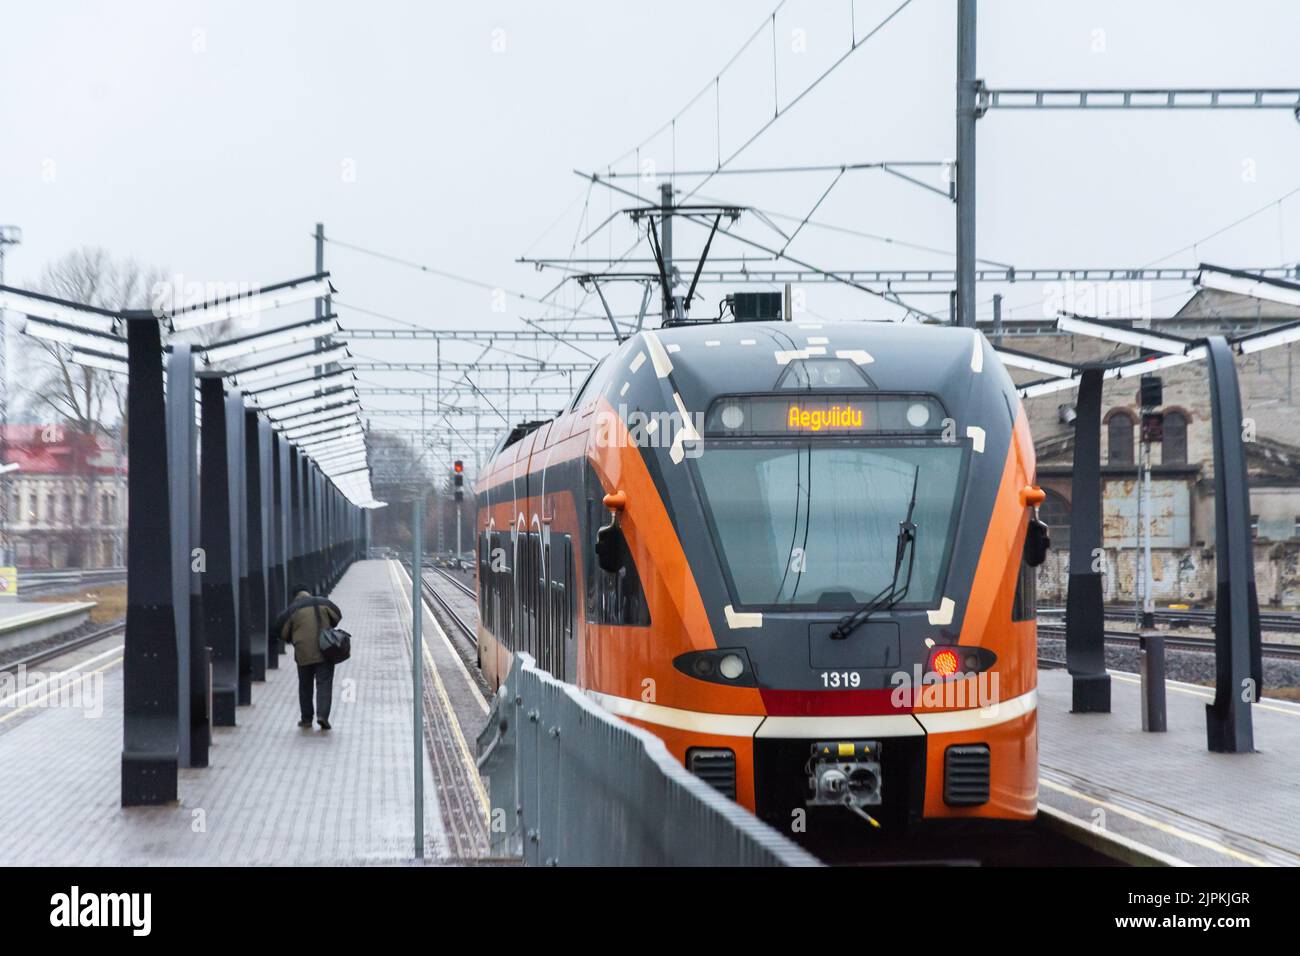 Train to Aegviidu at Balti jaam railway station in Tallinn Estonia Stock Photo